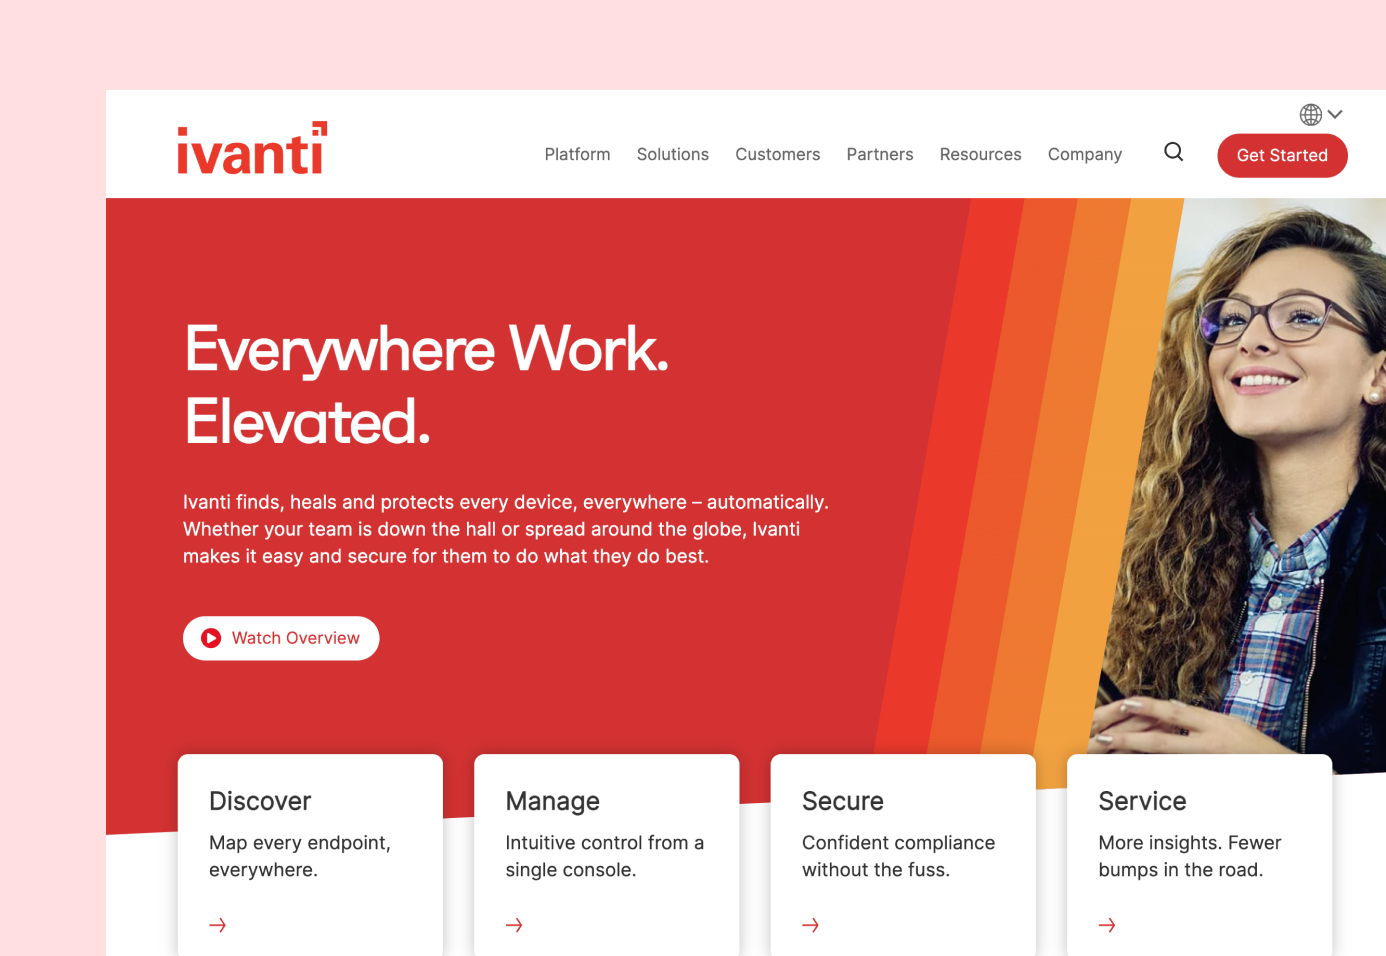 Ivanti's homepage